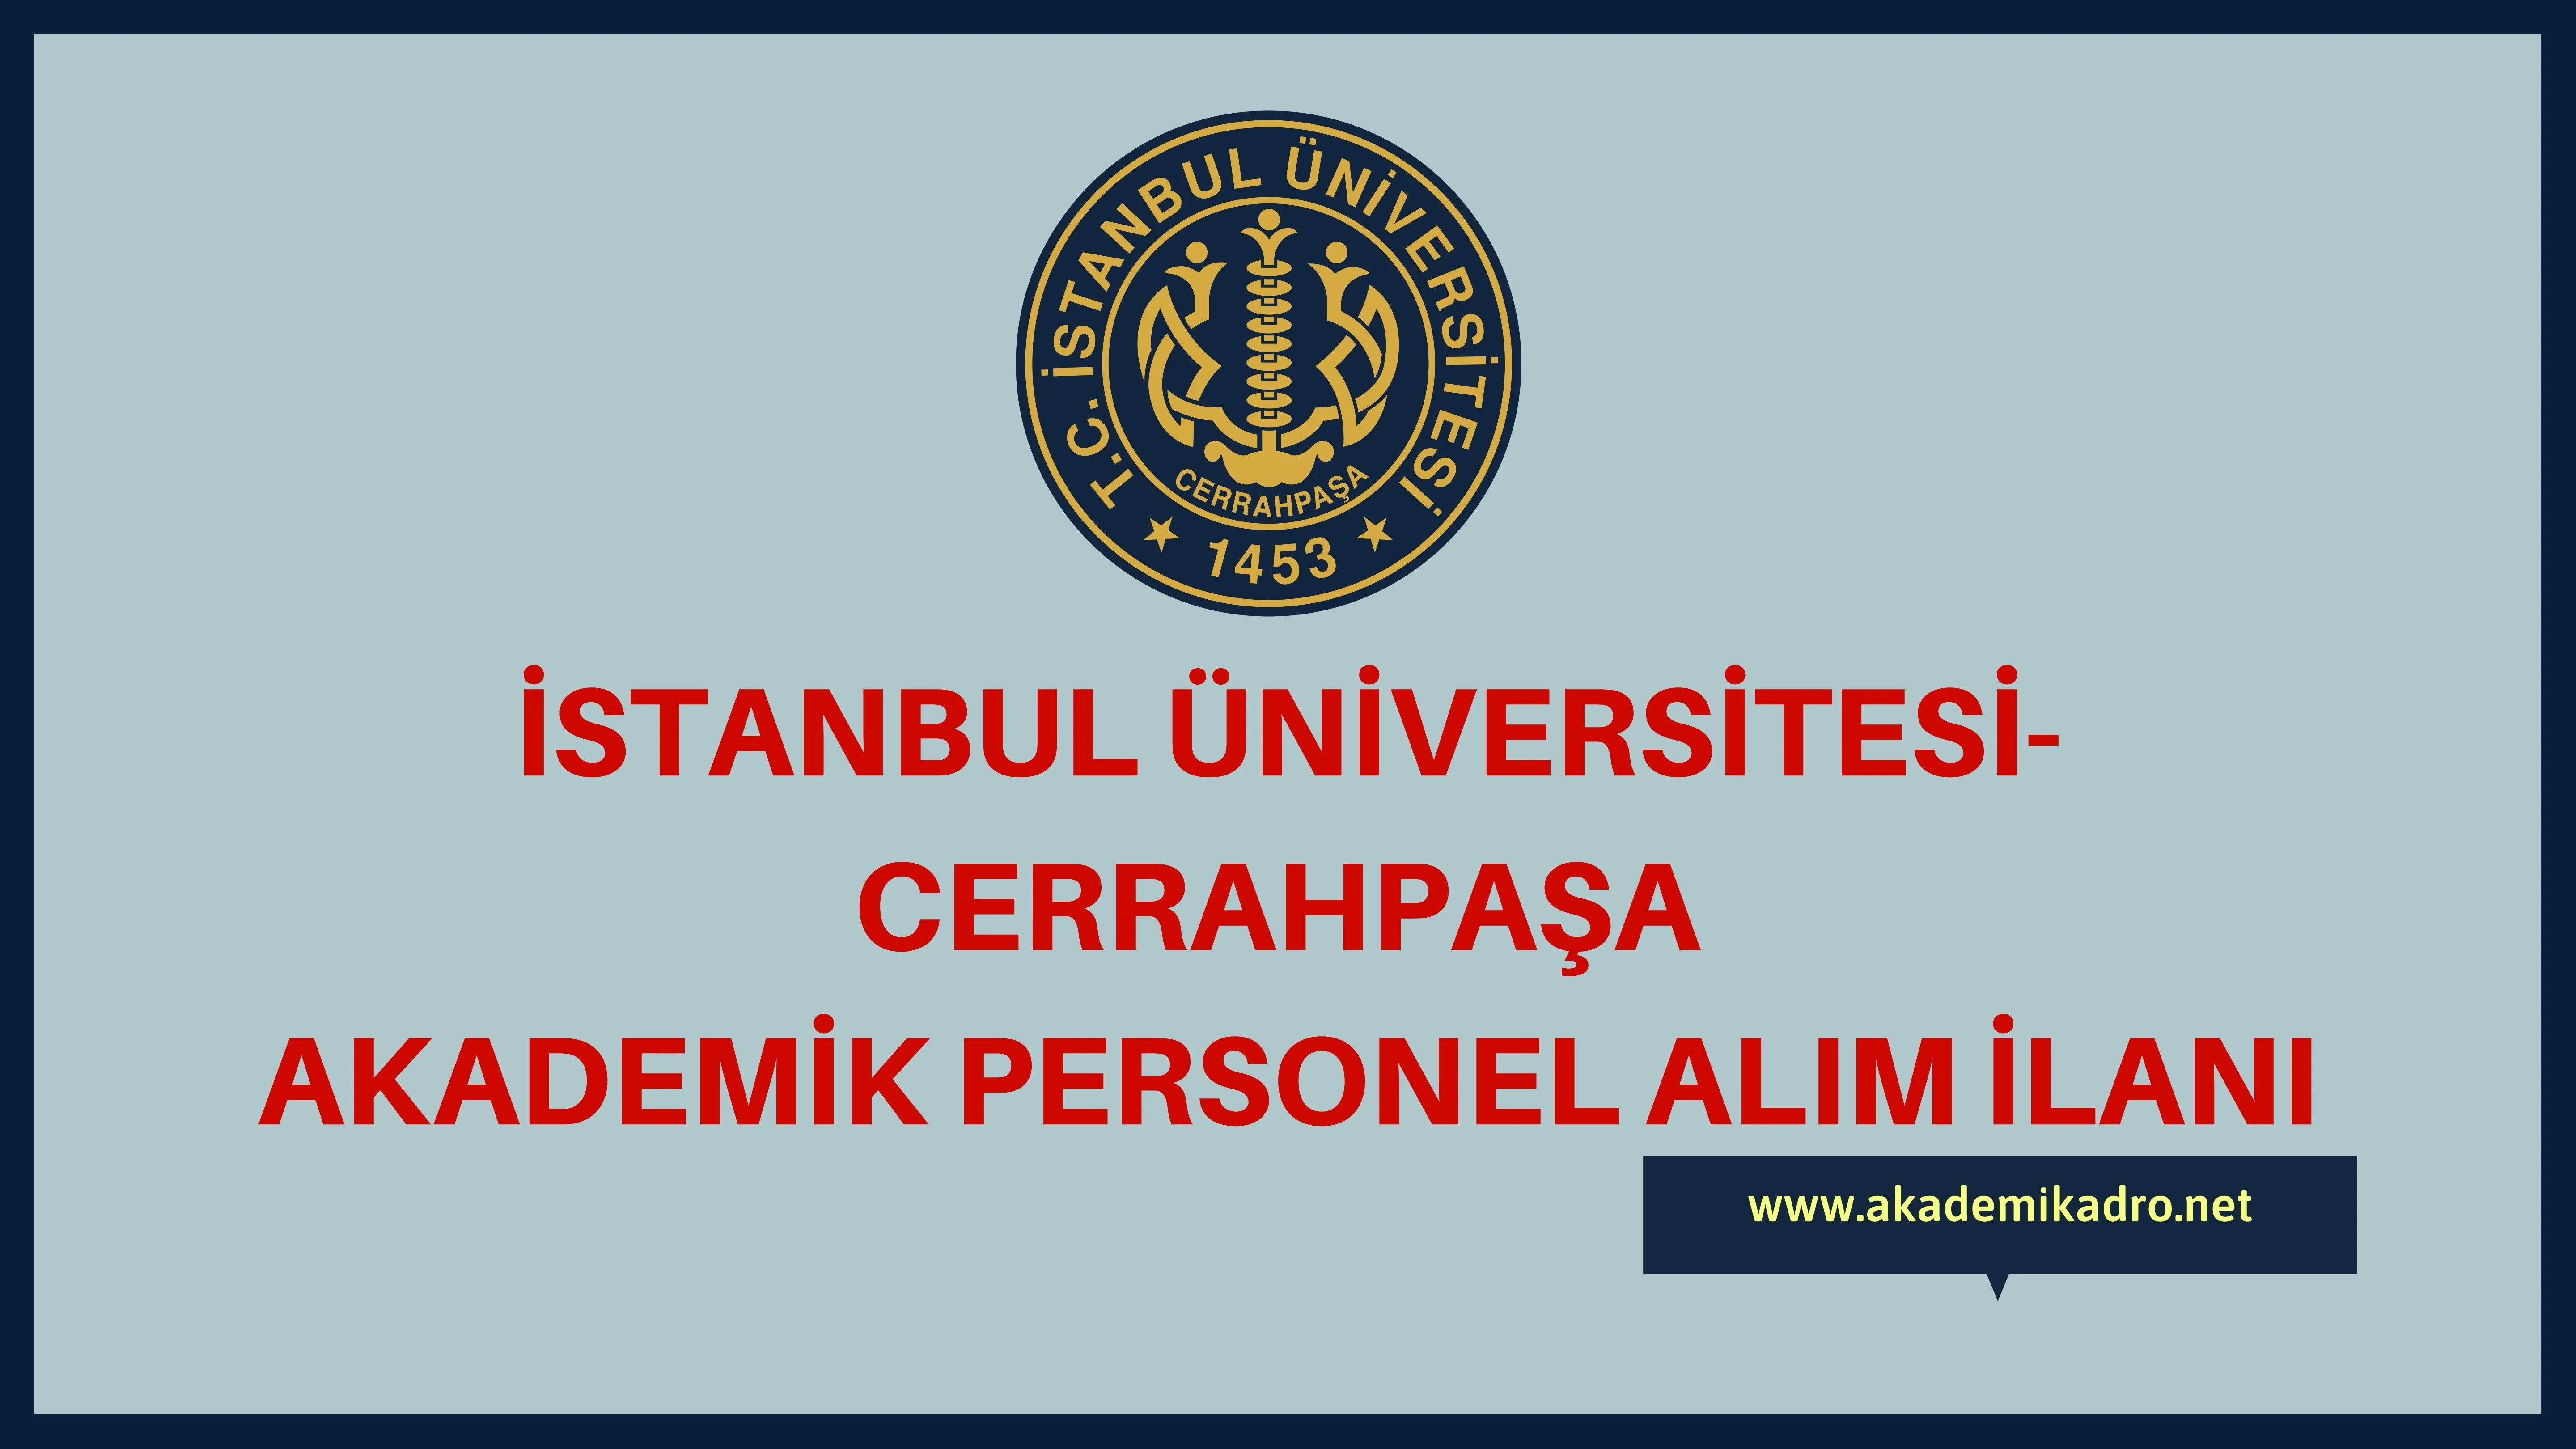 İstanbul Üniversitesi-Cerrahpaşa birçok alandan 84 akademik personel alacak.